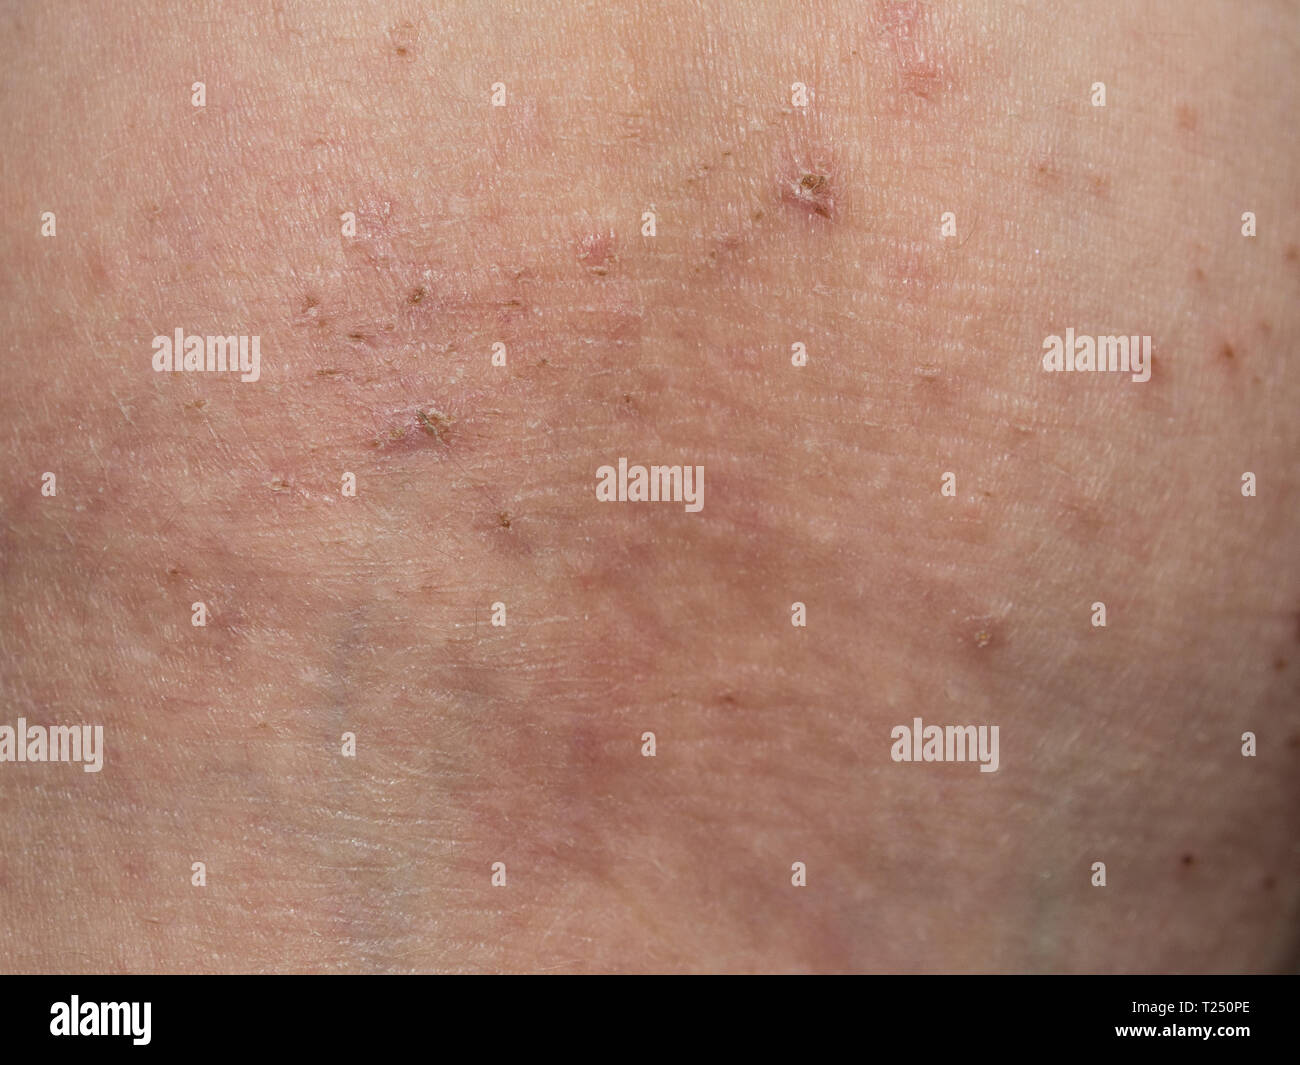 Una erupción en la piel. Close-up de una erupción en la piel alérgica. Foto de stock